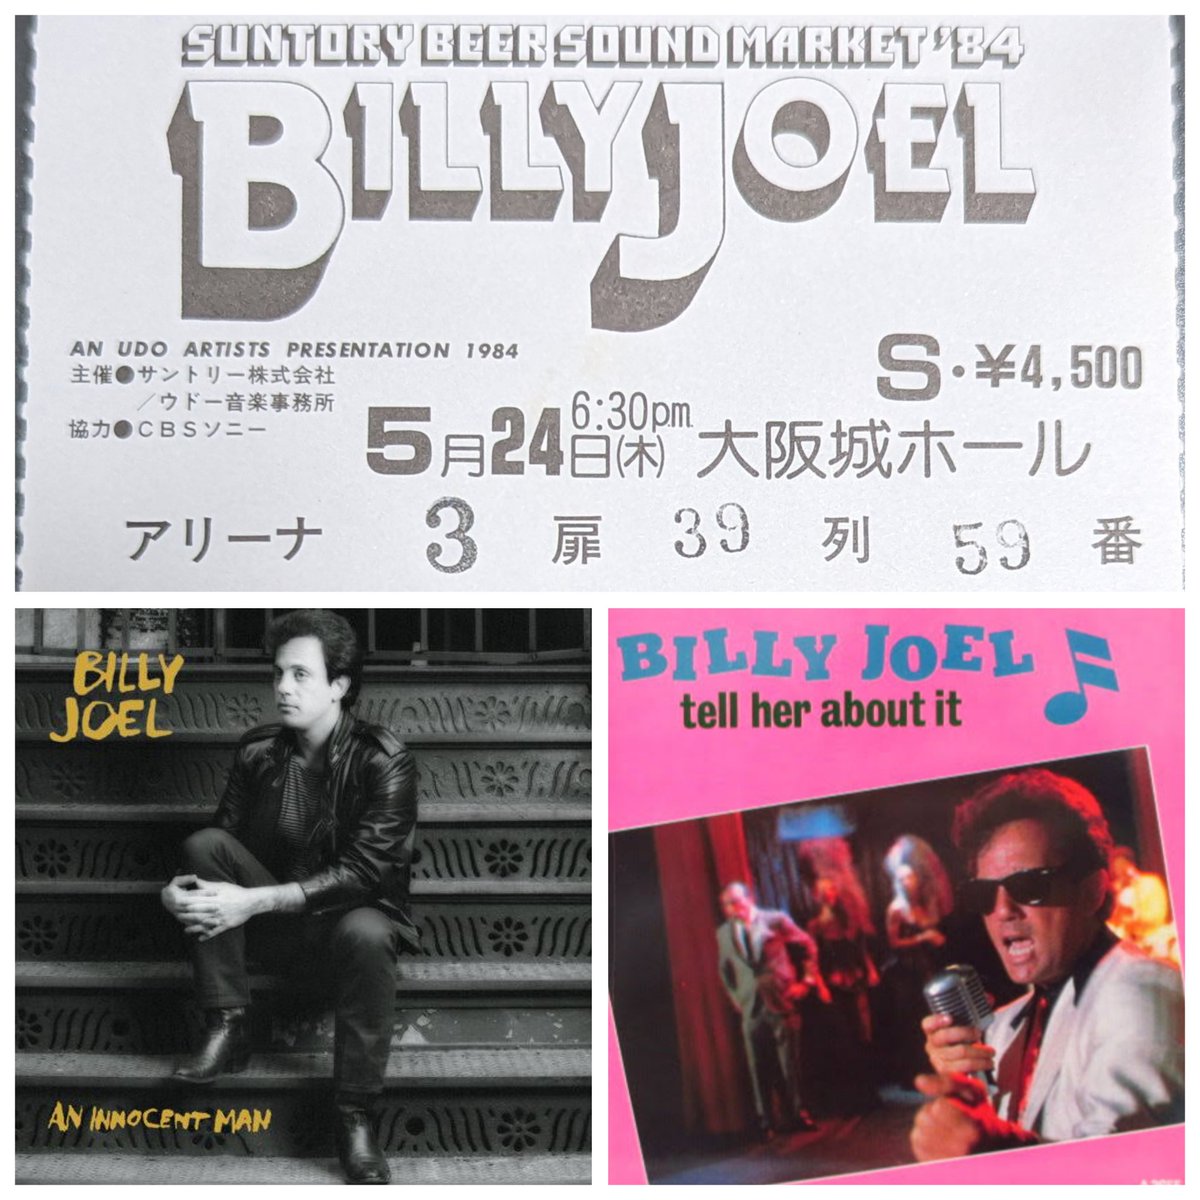 #40年前の今日
#BillyJoel
「 An Innocent Man Tour」大阪城ホール。絶頂期、あれも、これもの素晴らしいライブでしたね。